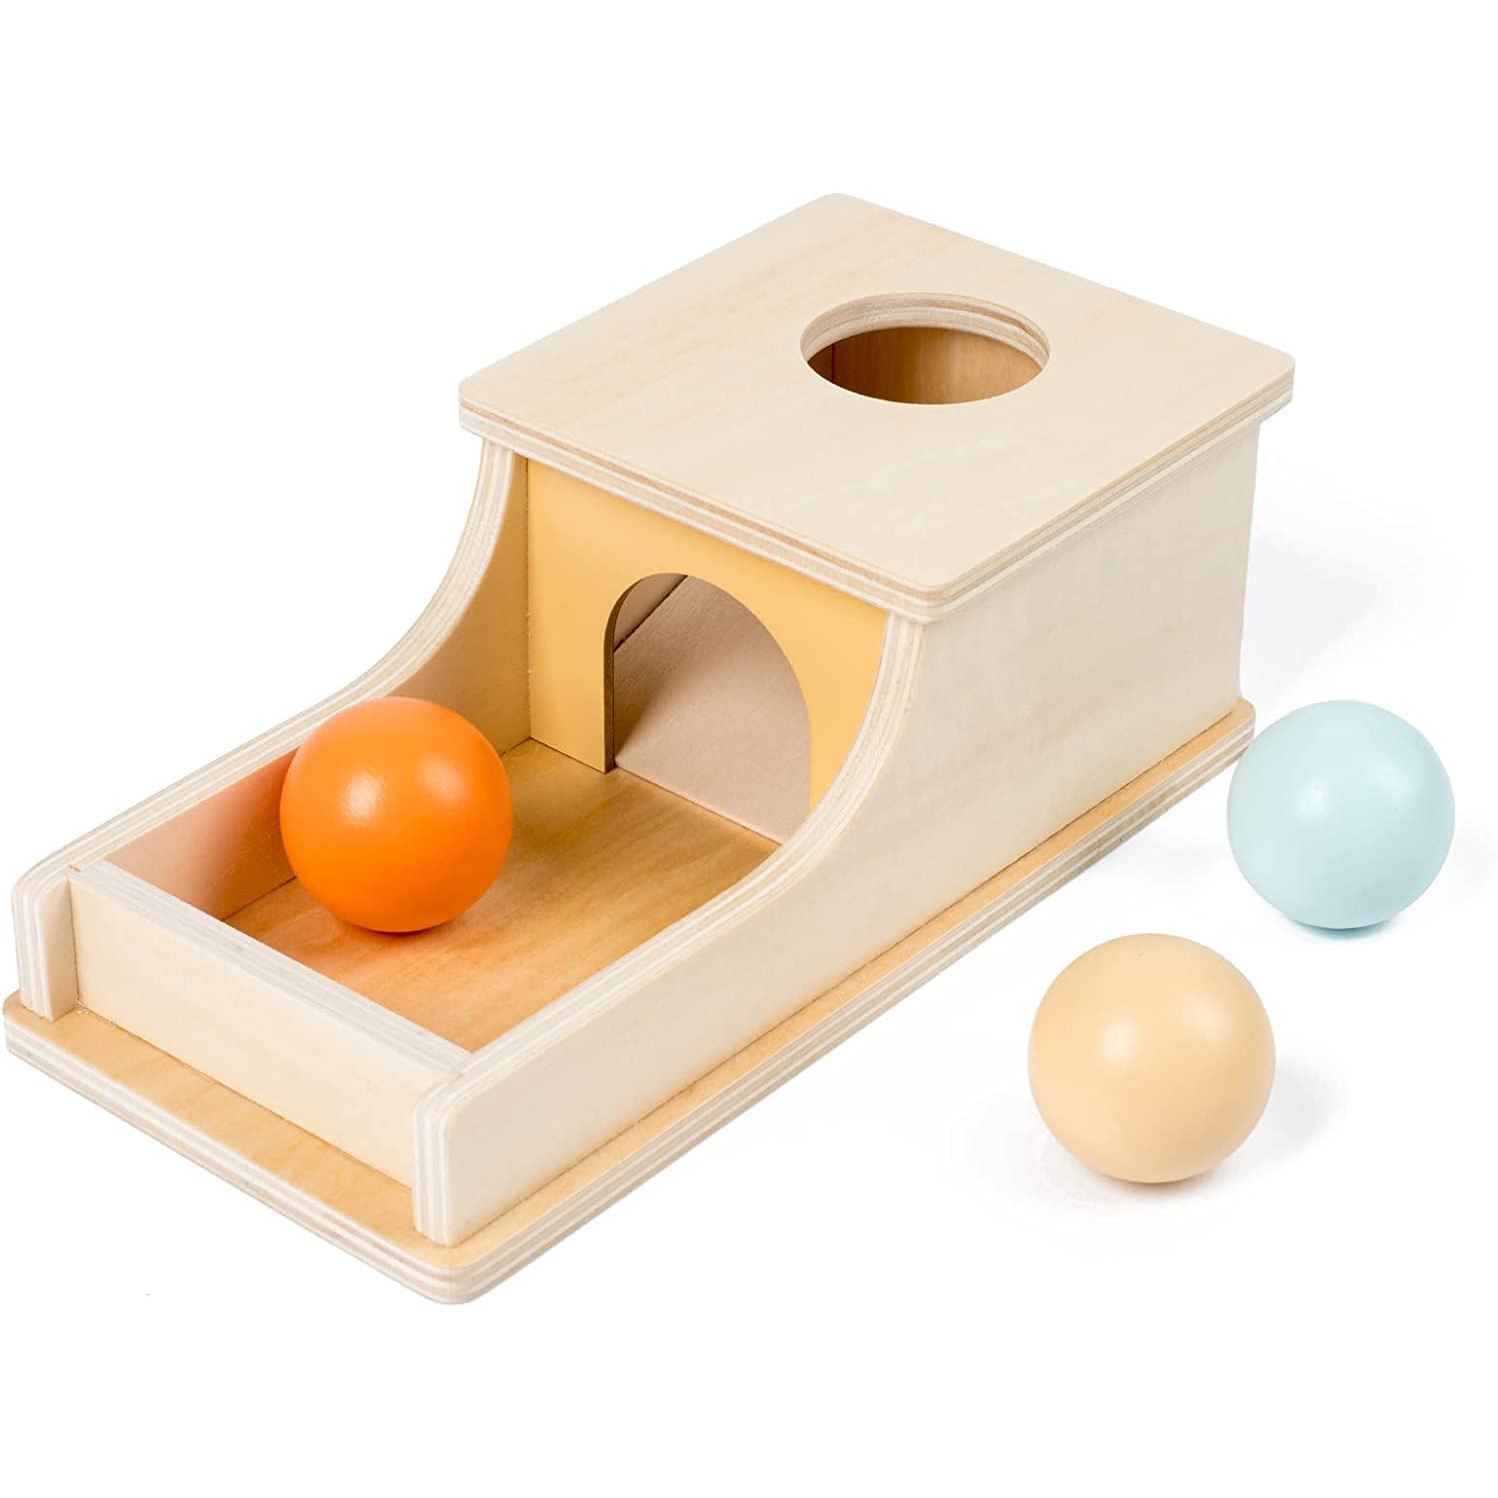 Cutia permanentei cu 3 bile, Joc Montessori din lemn natural